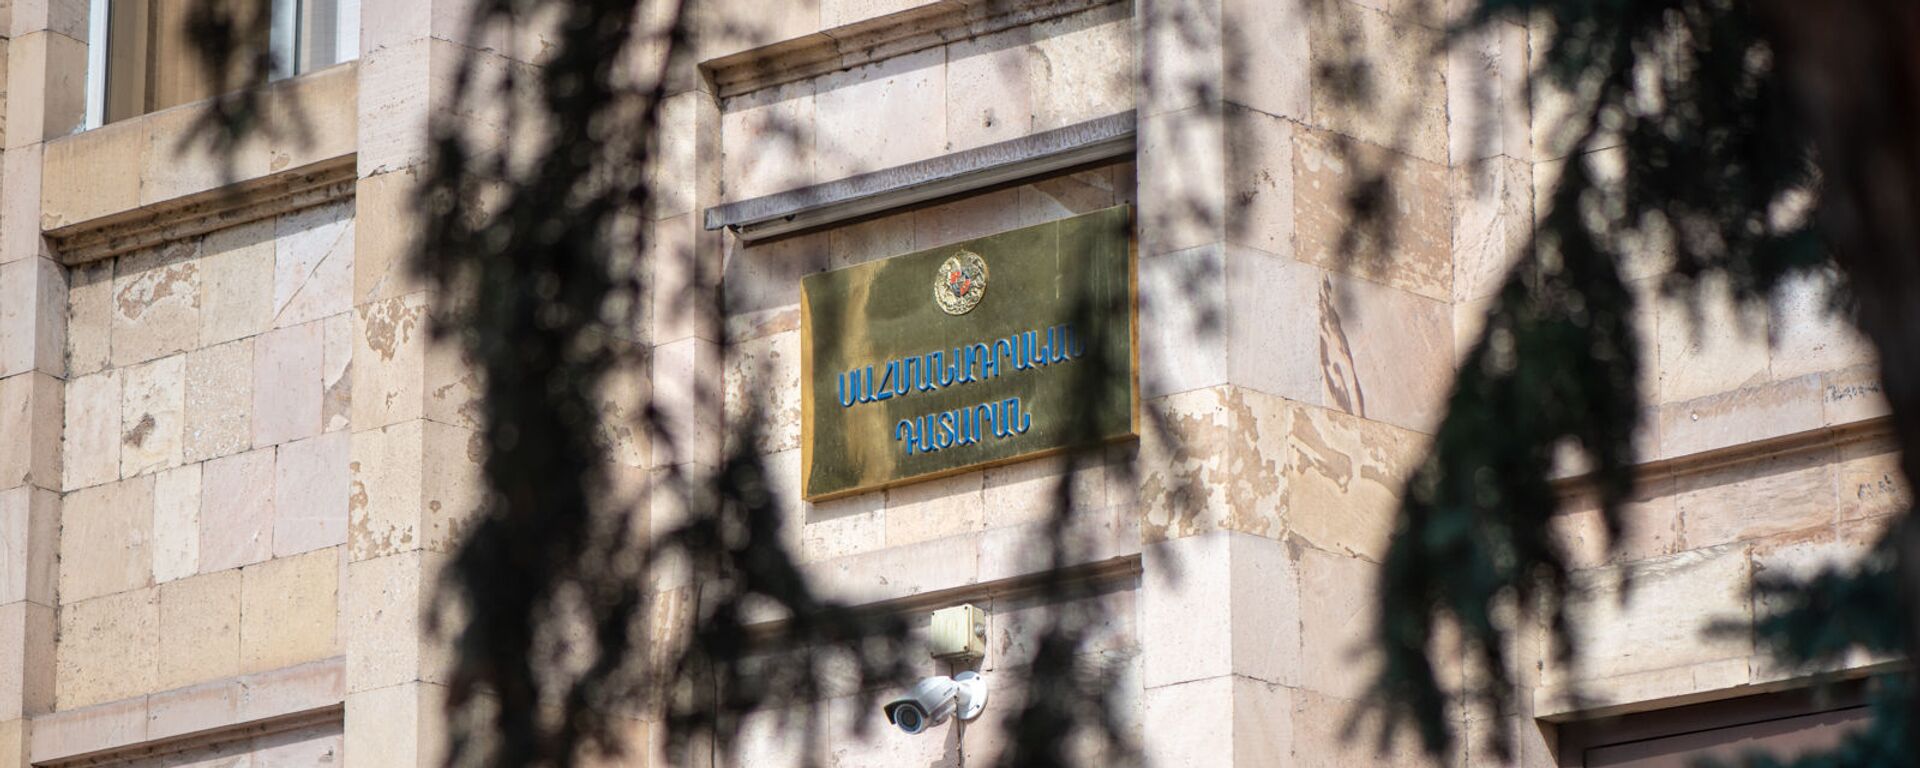 Вывеска над входом в здание Конституционного суда Армении - Sputnik Արմենիա, 1920, 22.01.2021